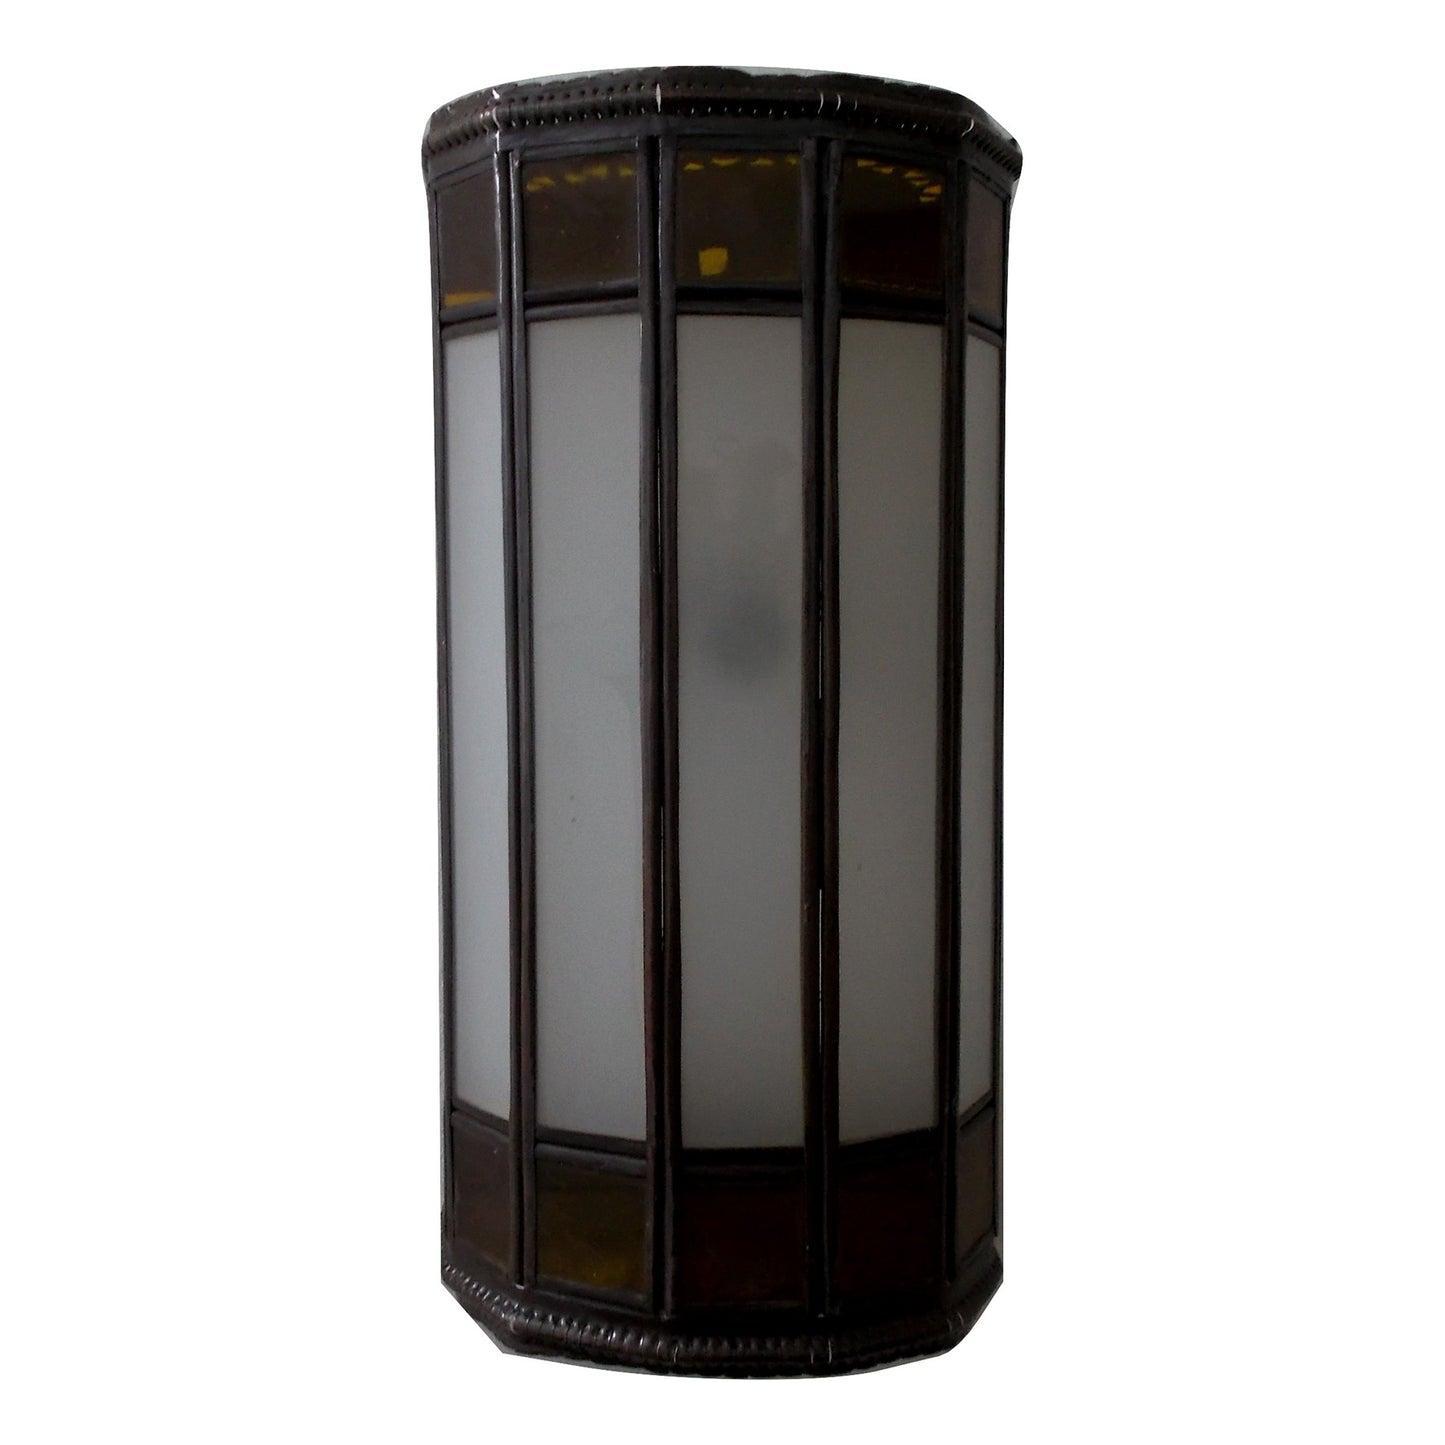 Marokkaanse wandlamp aluminium en glas Marokko Etnisch meubilair 2401191042